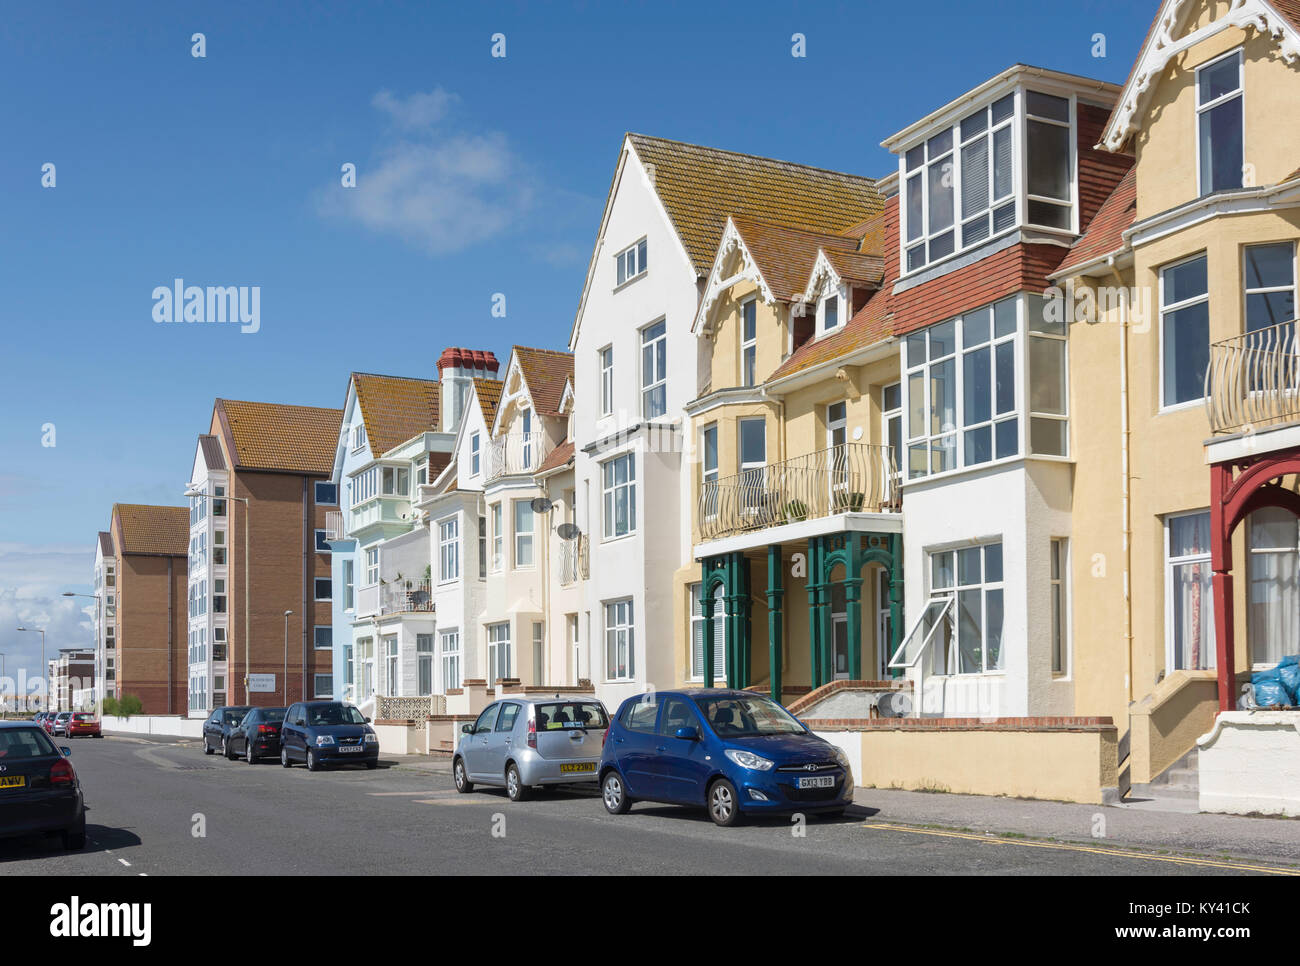 Maisons en bord de mer sur l'Esplanade, Jalhay, East Sussex, Angleterre, Royaume-Uni Banque D'Images